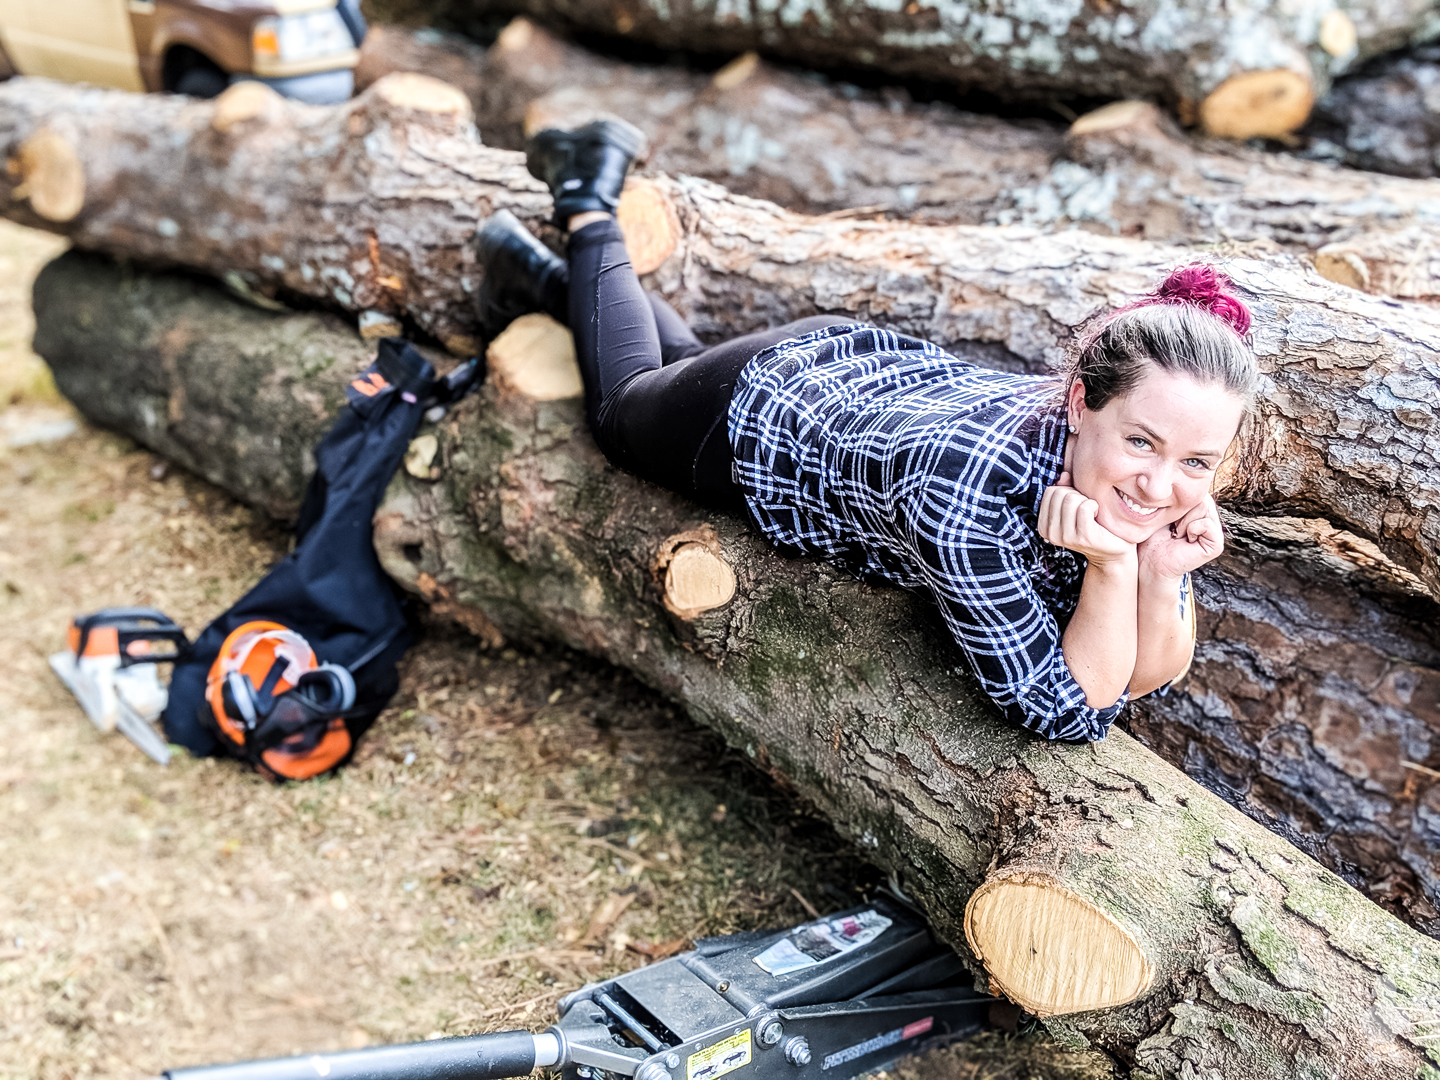 Sarah laying on wood logs